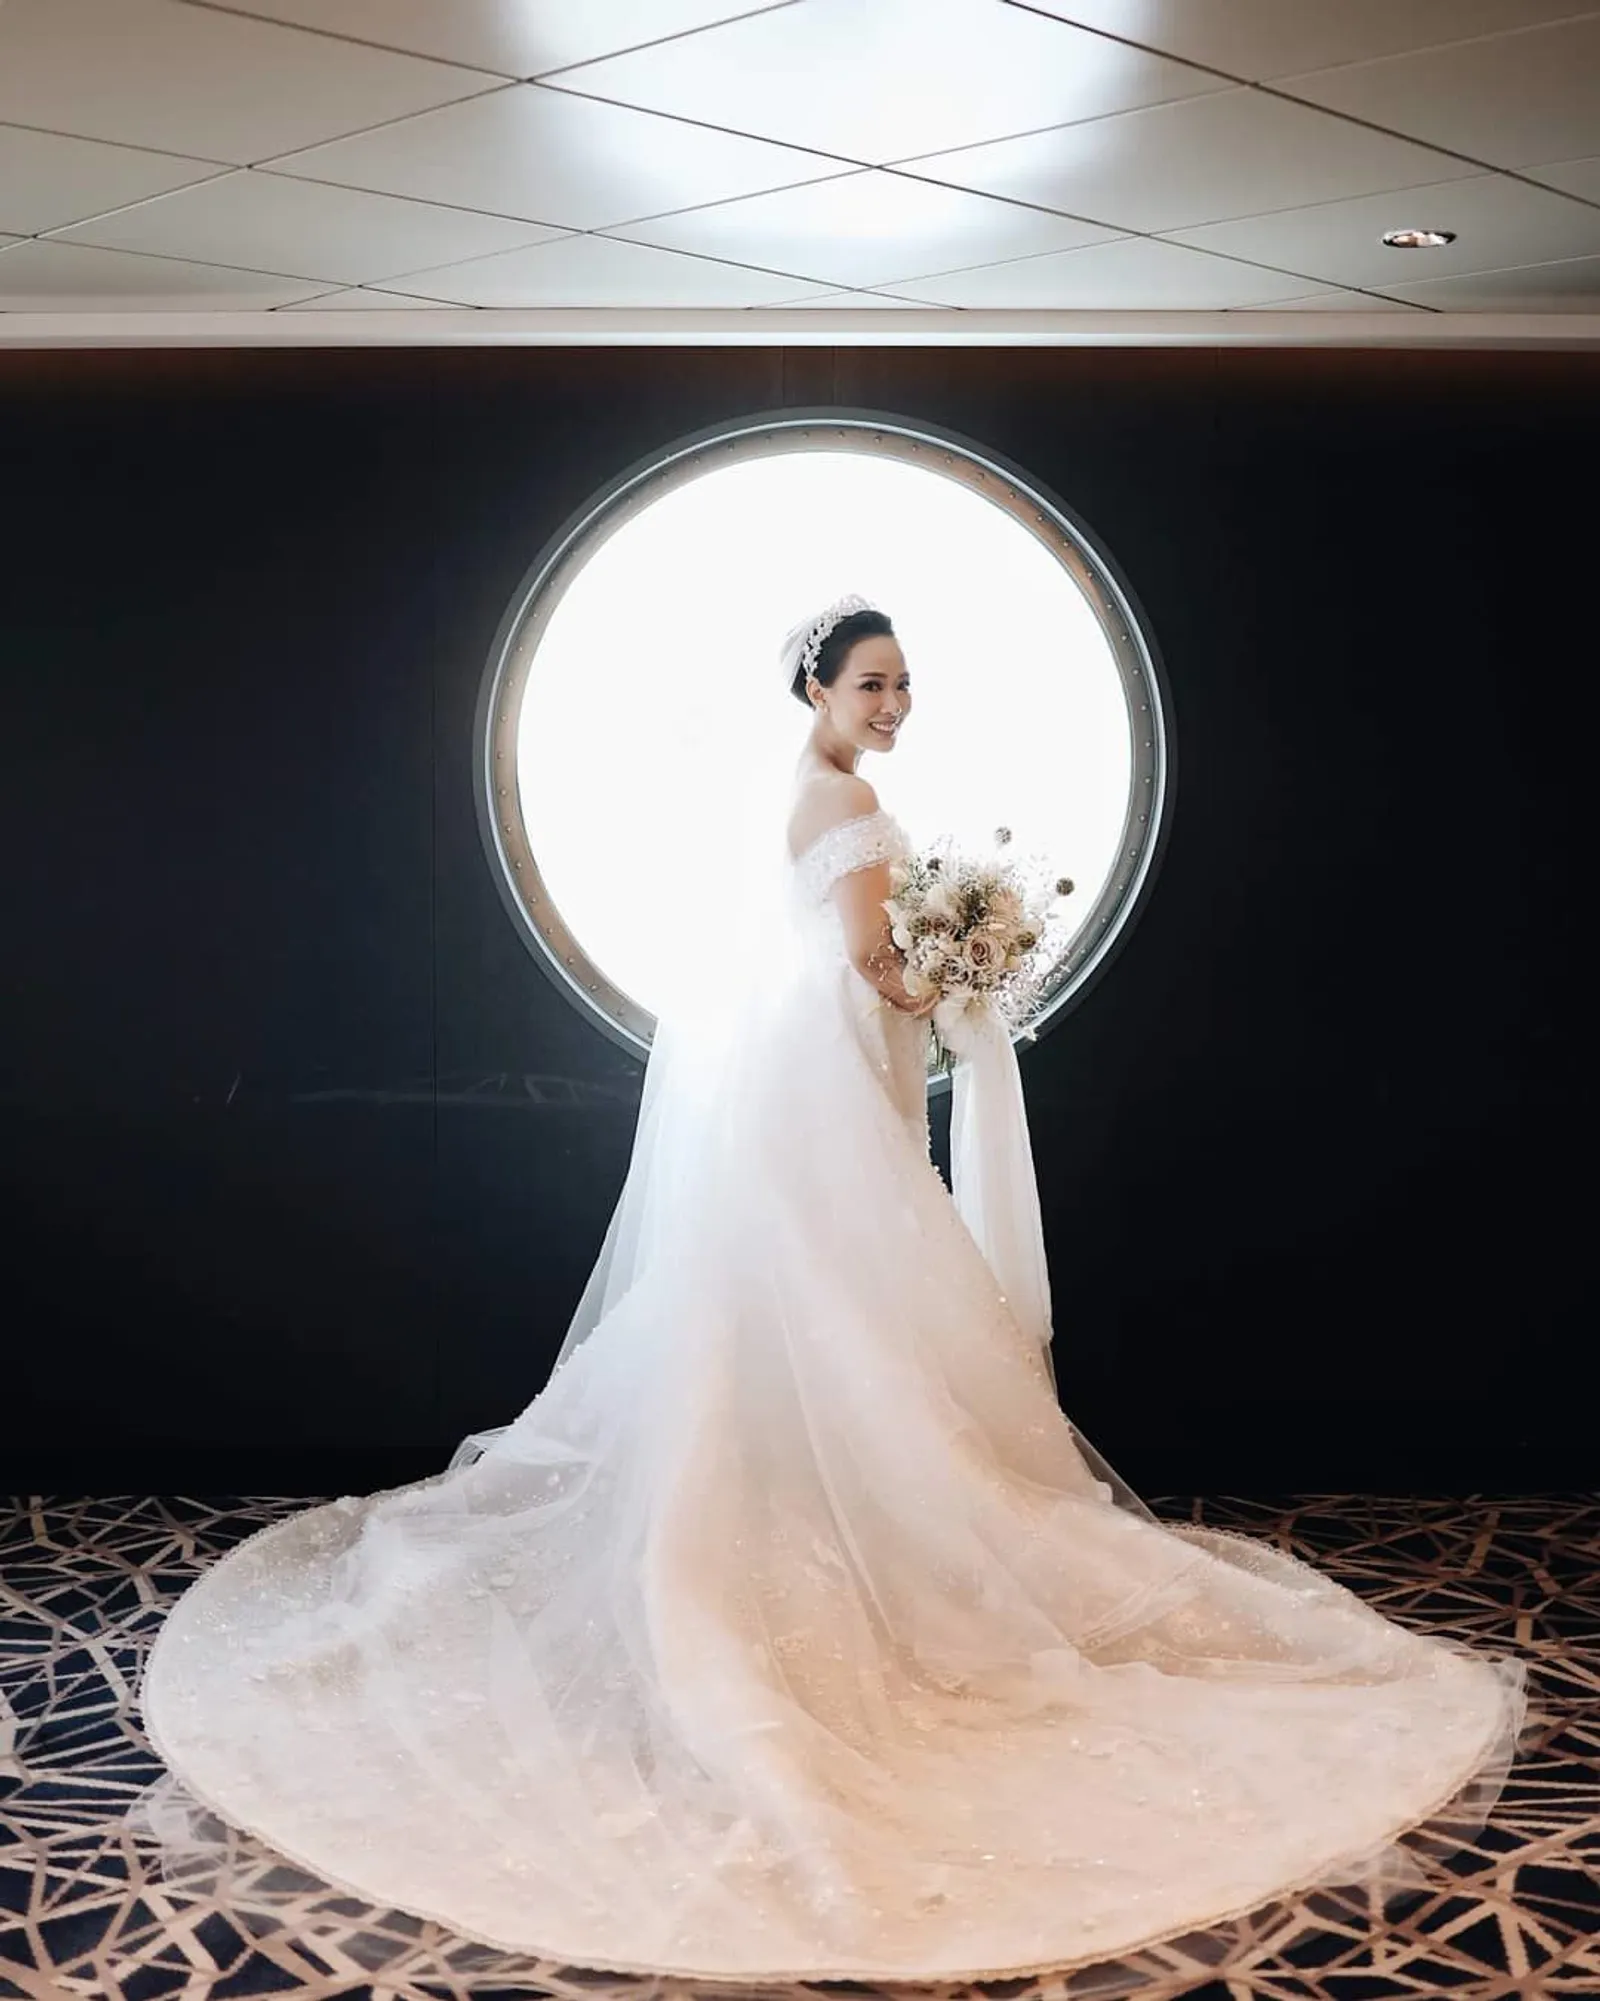 7 Artis Indonesia yang Pakai Gaun Pernikahan Layaknya Putri Dongeng